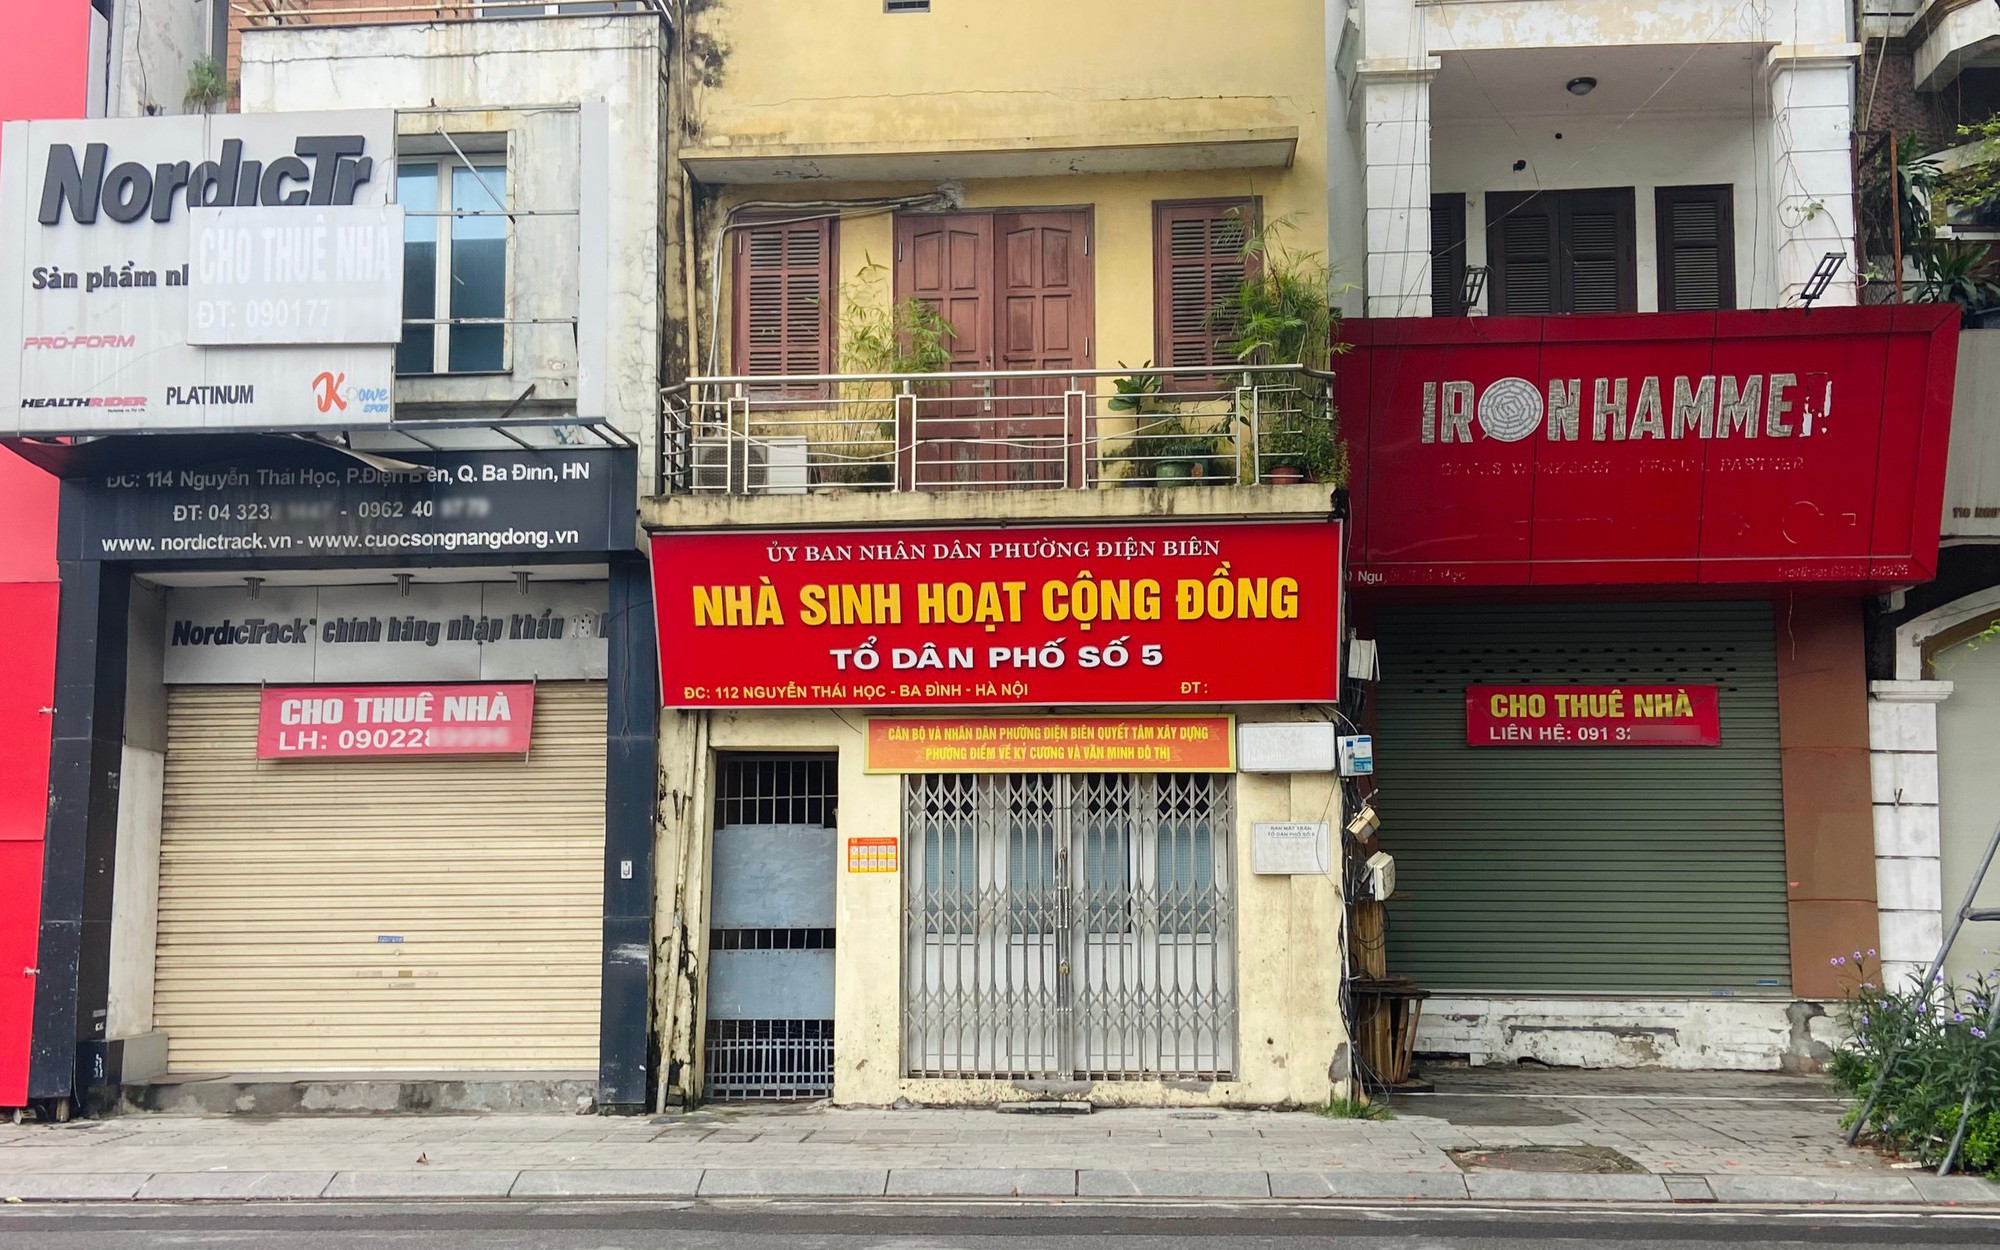 Buôn bán ế, nhiều chủ hàng kinh doanh “tháo chạy” trả lại mặt bằng tại vị trí trung tâm Hà Nội